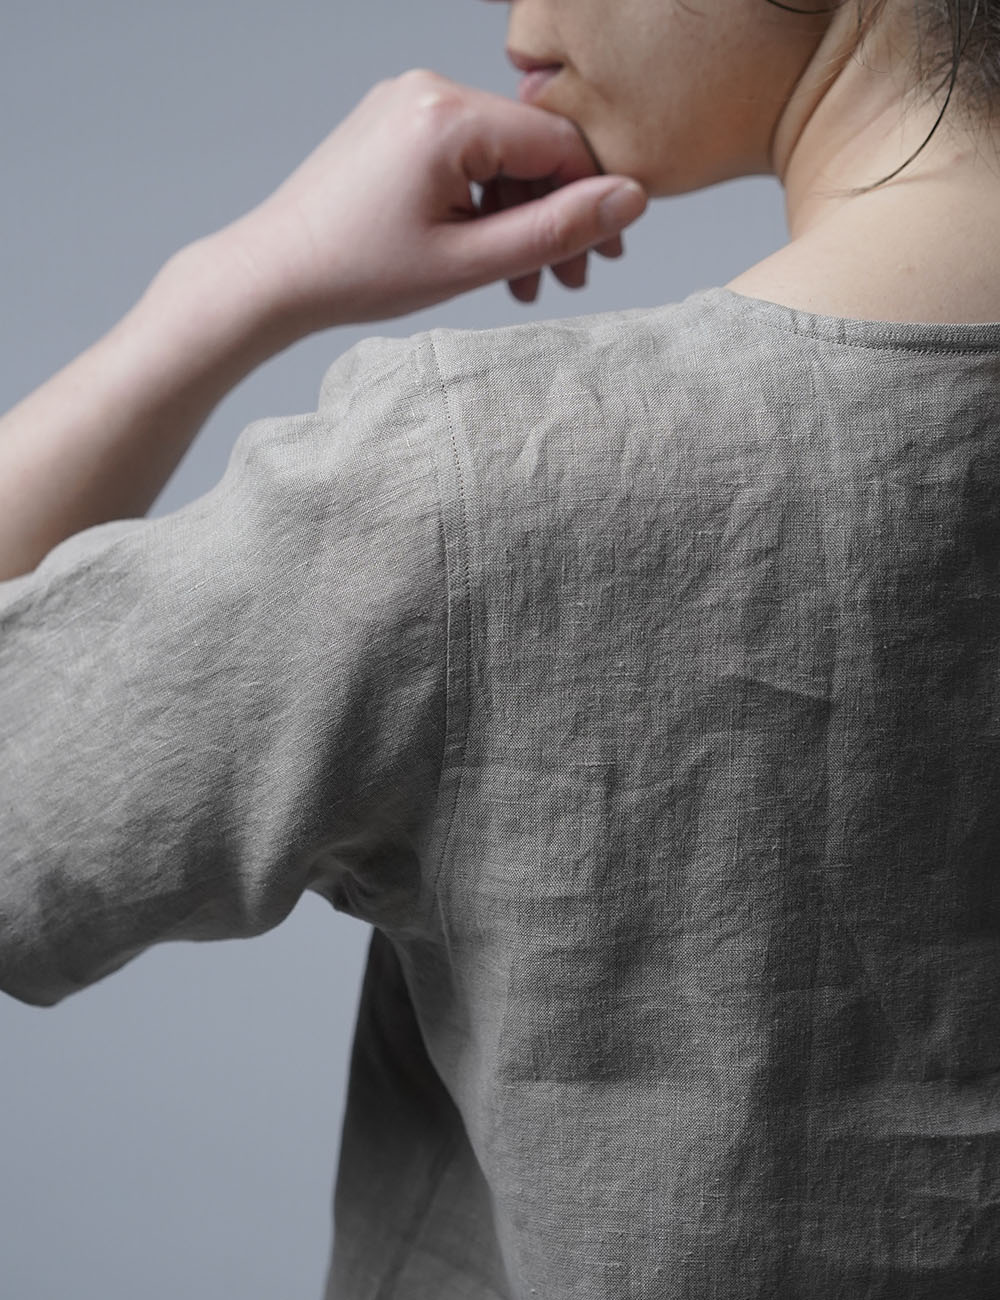 【wafu】雅亜麻リネンTシャツ インナー リネンブラウス ペチコートにも 半袖 丸首 T-shirt /榛色(はしばみいろ) p015a-hbm1